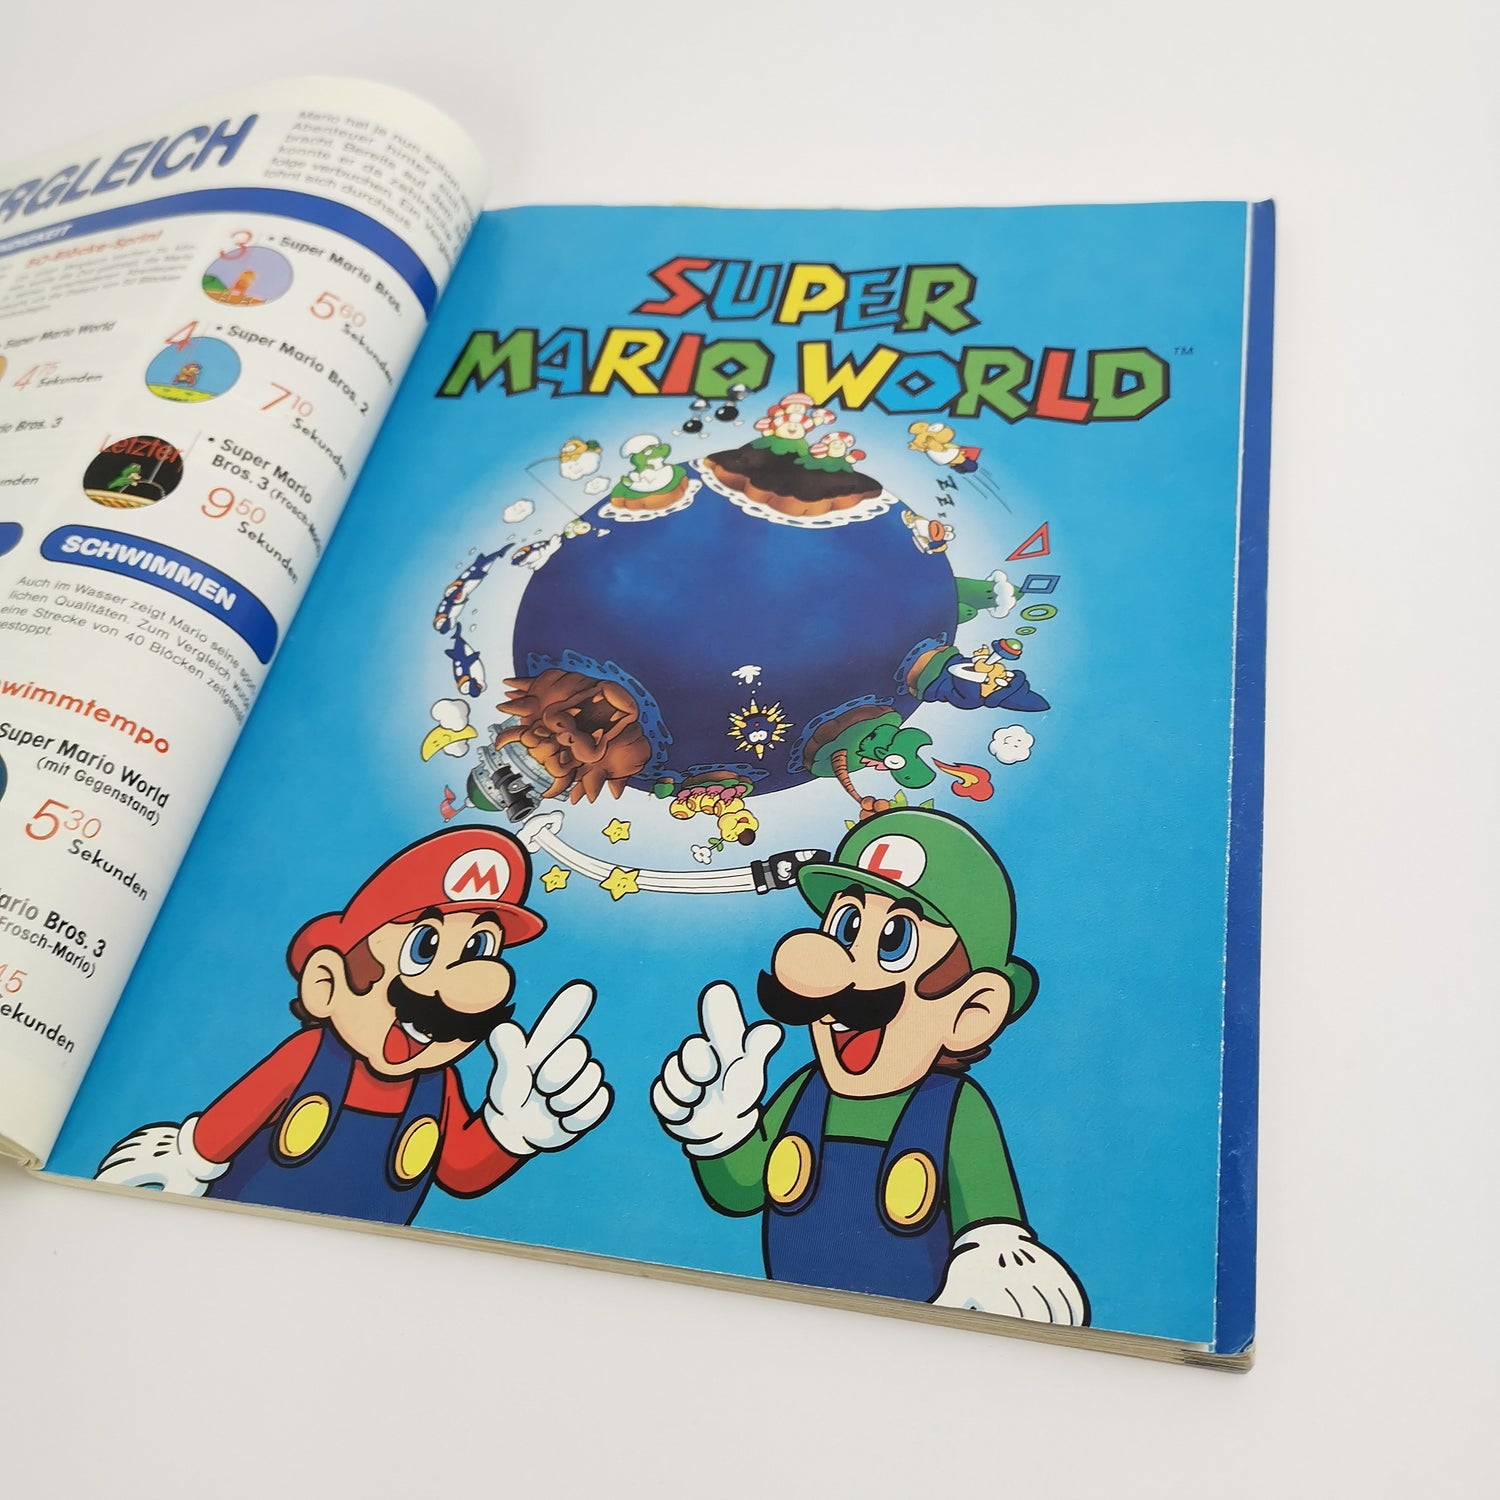 Der offizielle Super Mario World Spieleberater | Lösungsbuch SNES | Guide